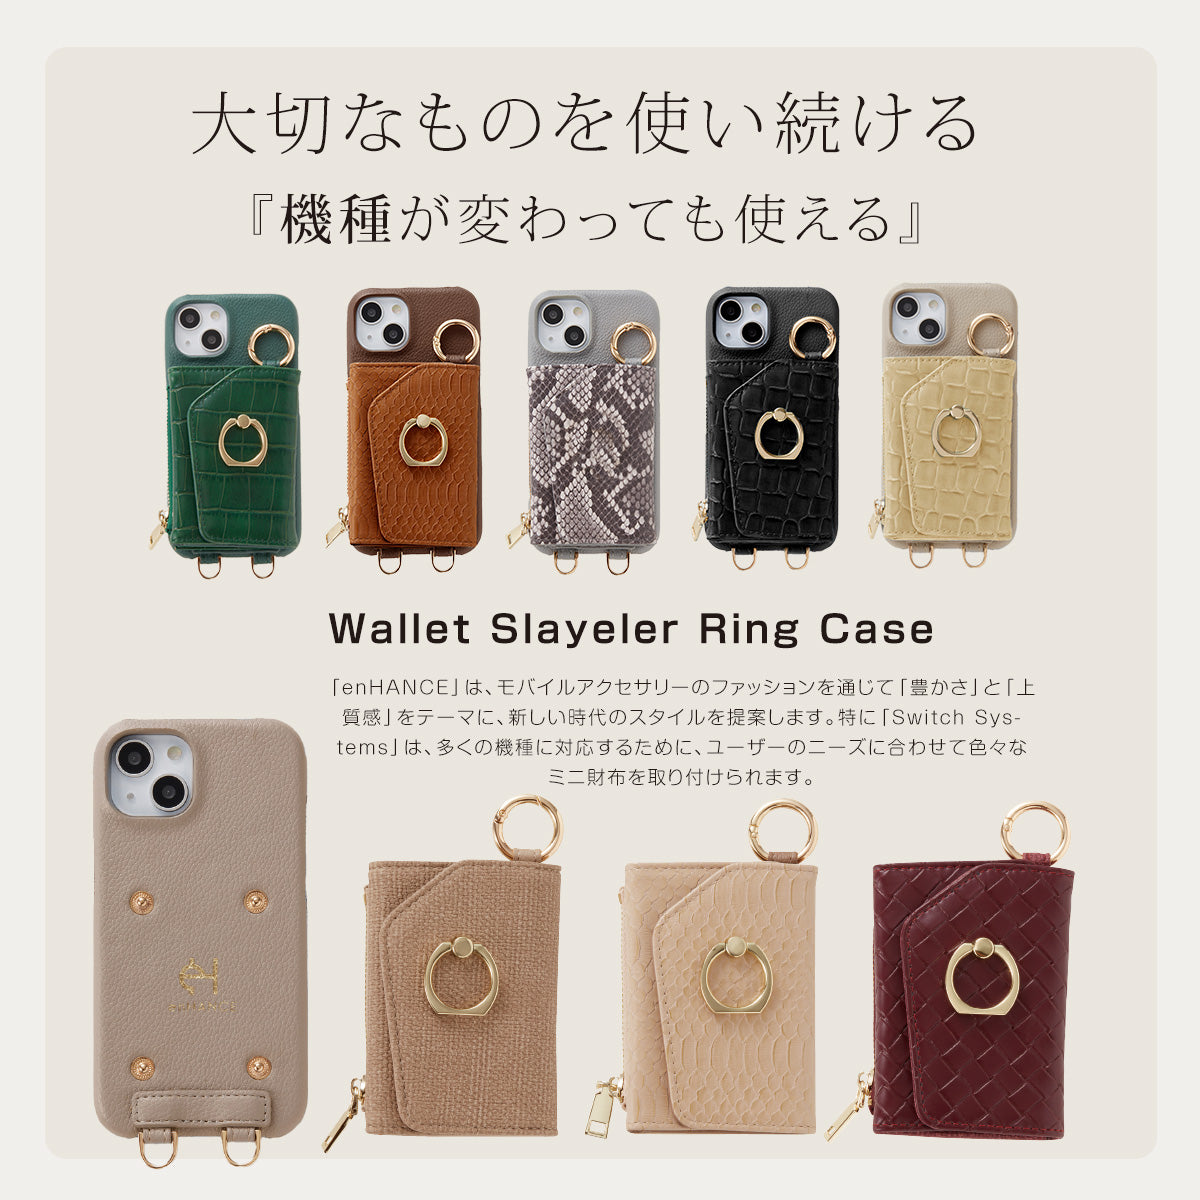 【WALLET SLAYLER】BASIC-CASE BEIGE iPhone